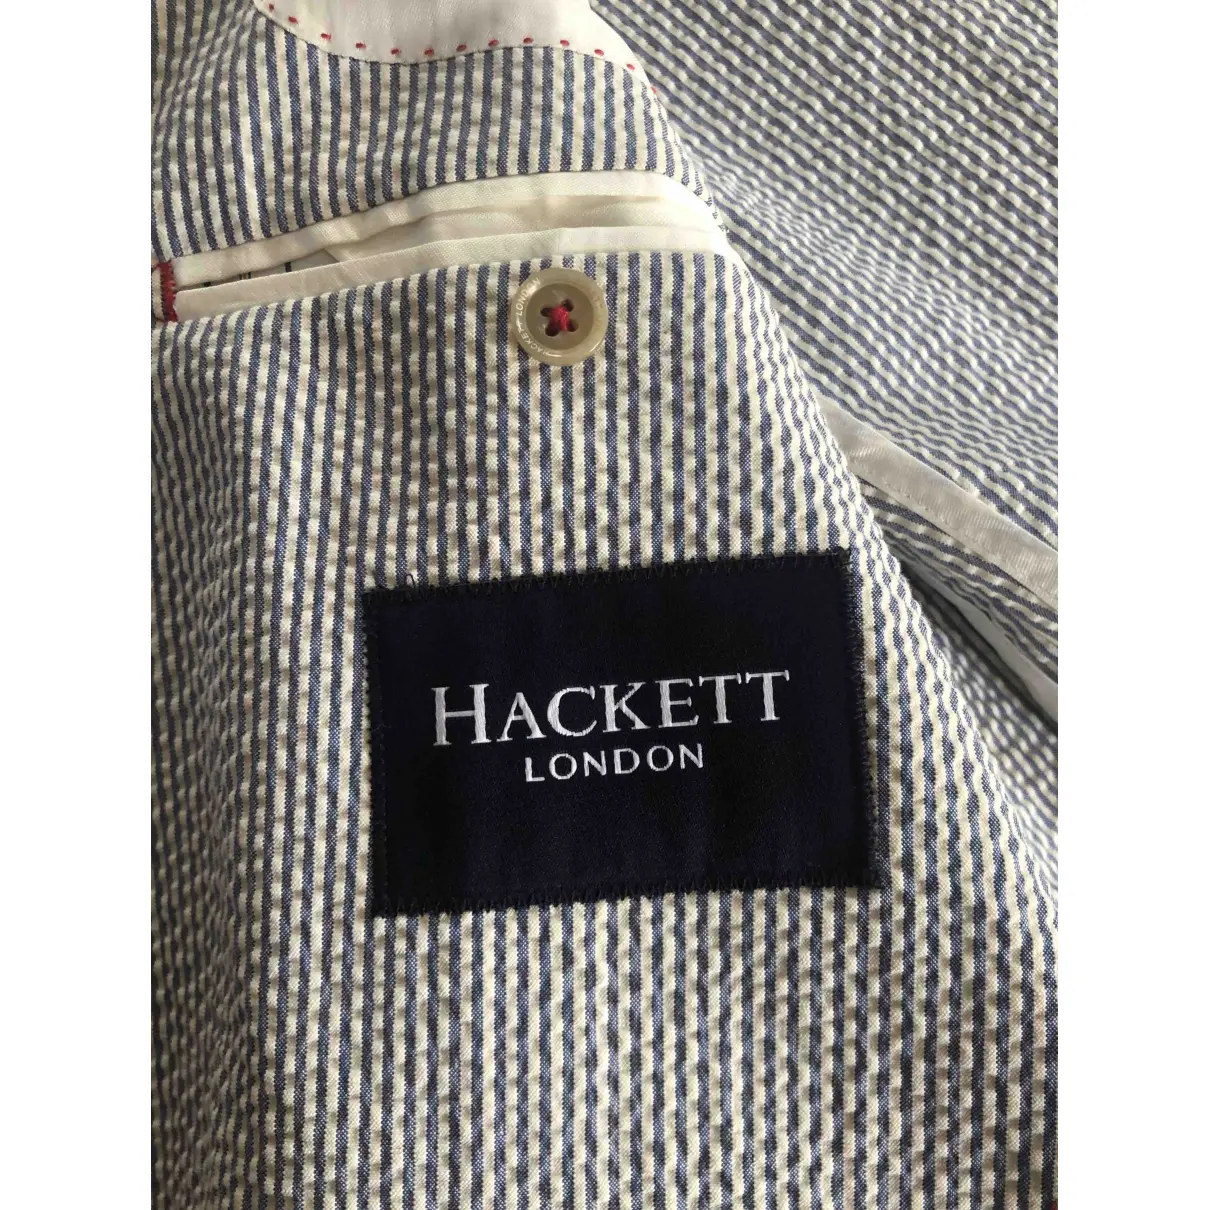 Suit Hackett London